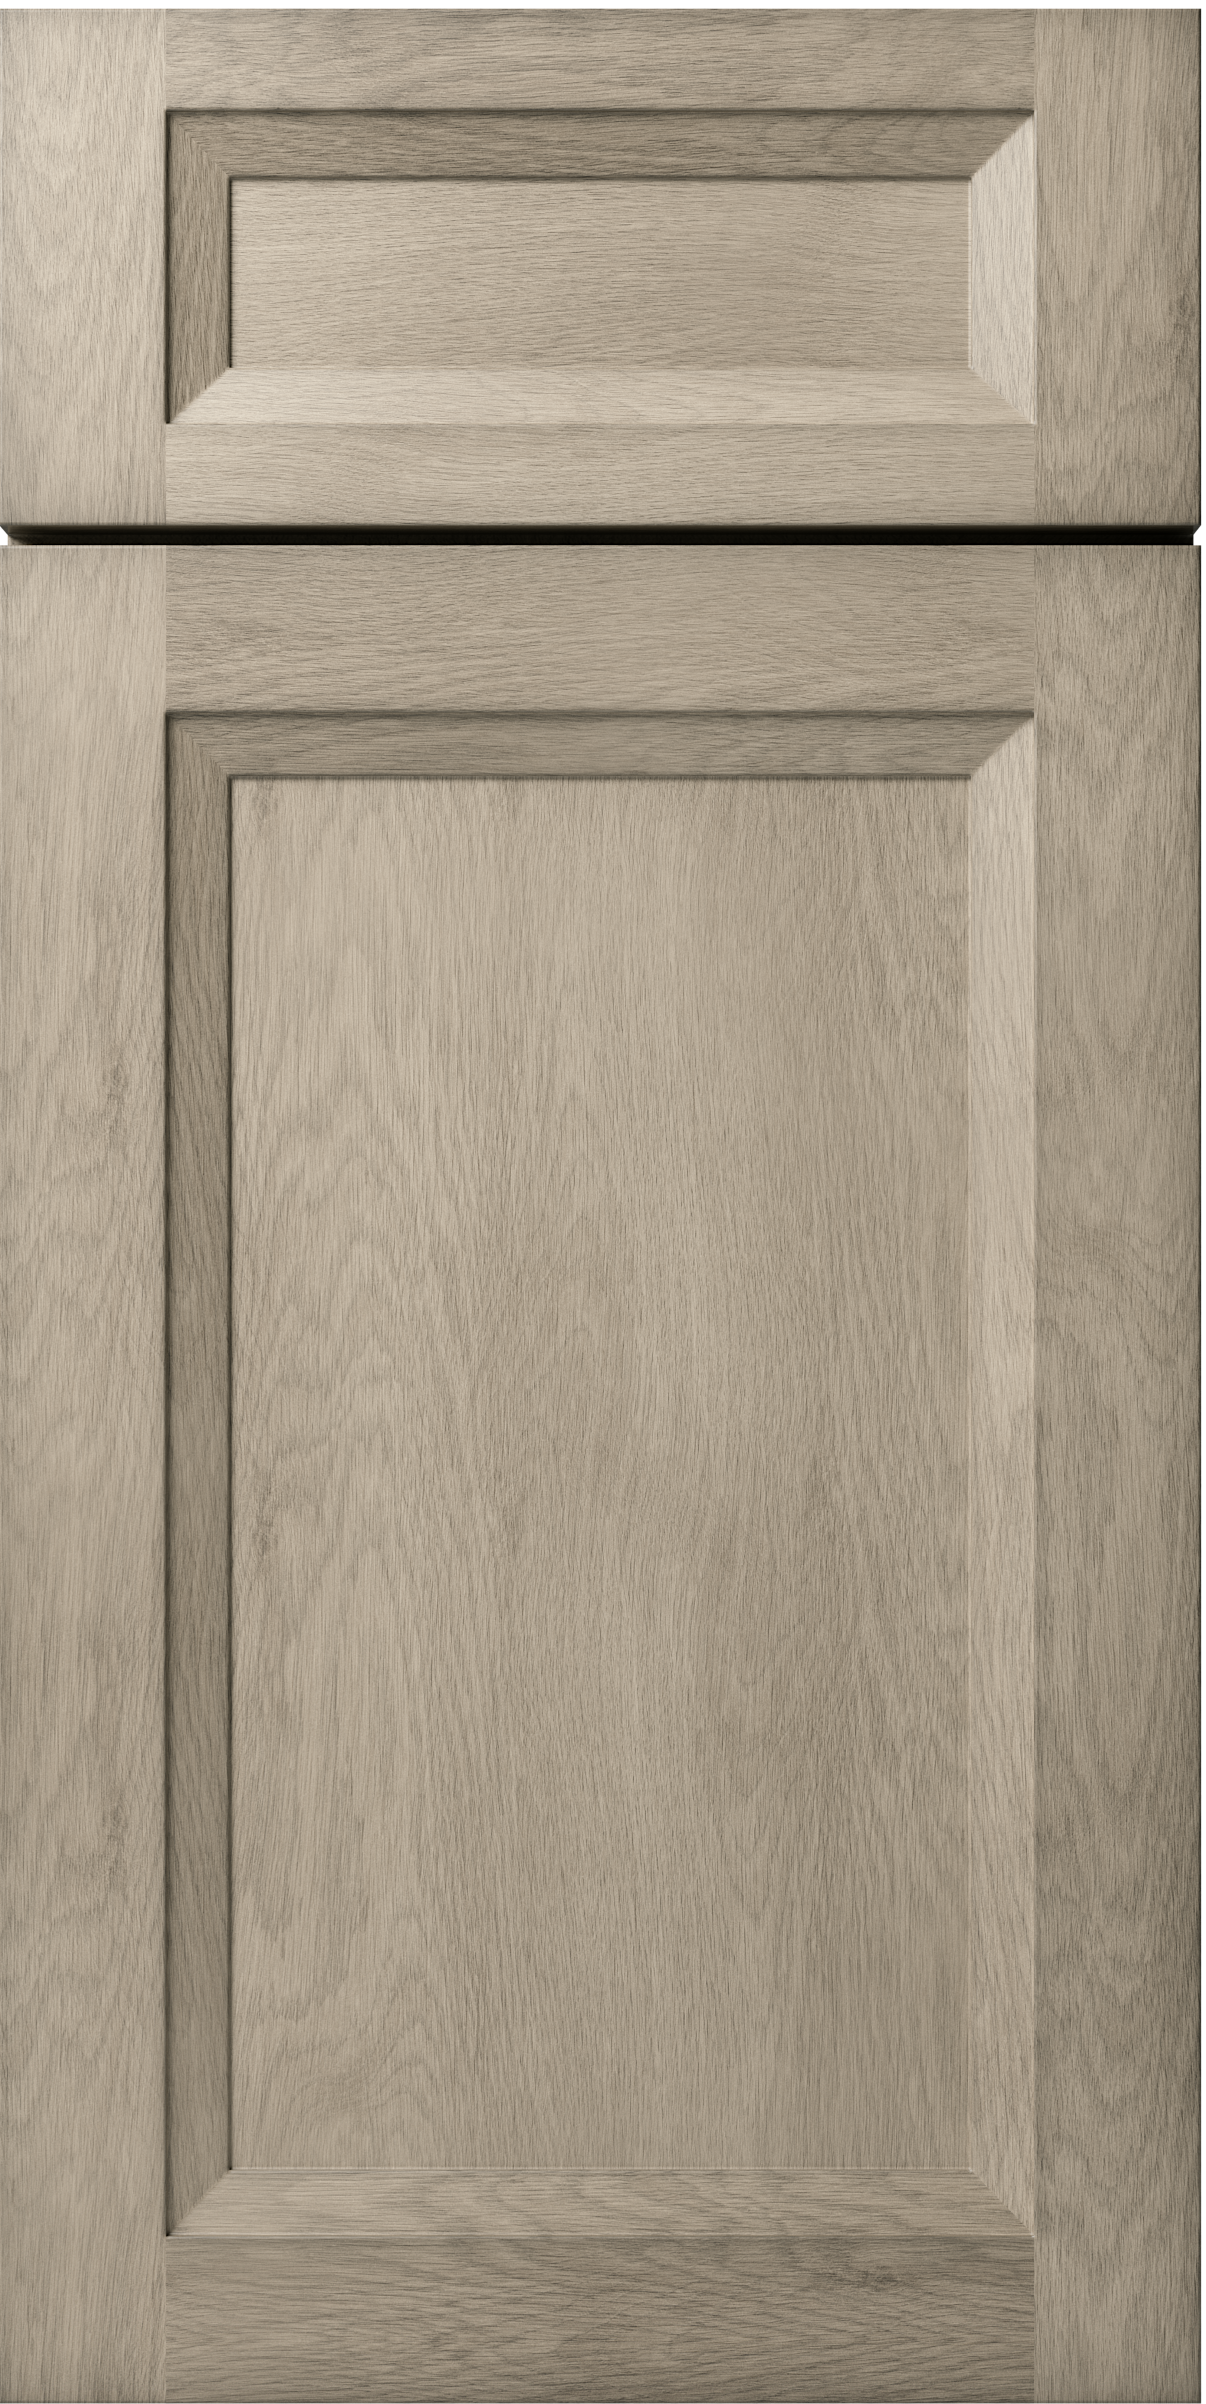 OXFORD MIST SAMPLE DOOR - 11"W X 15"H X 3/4"D